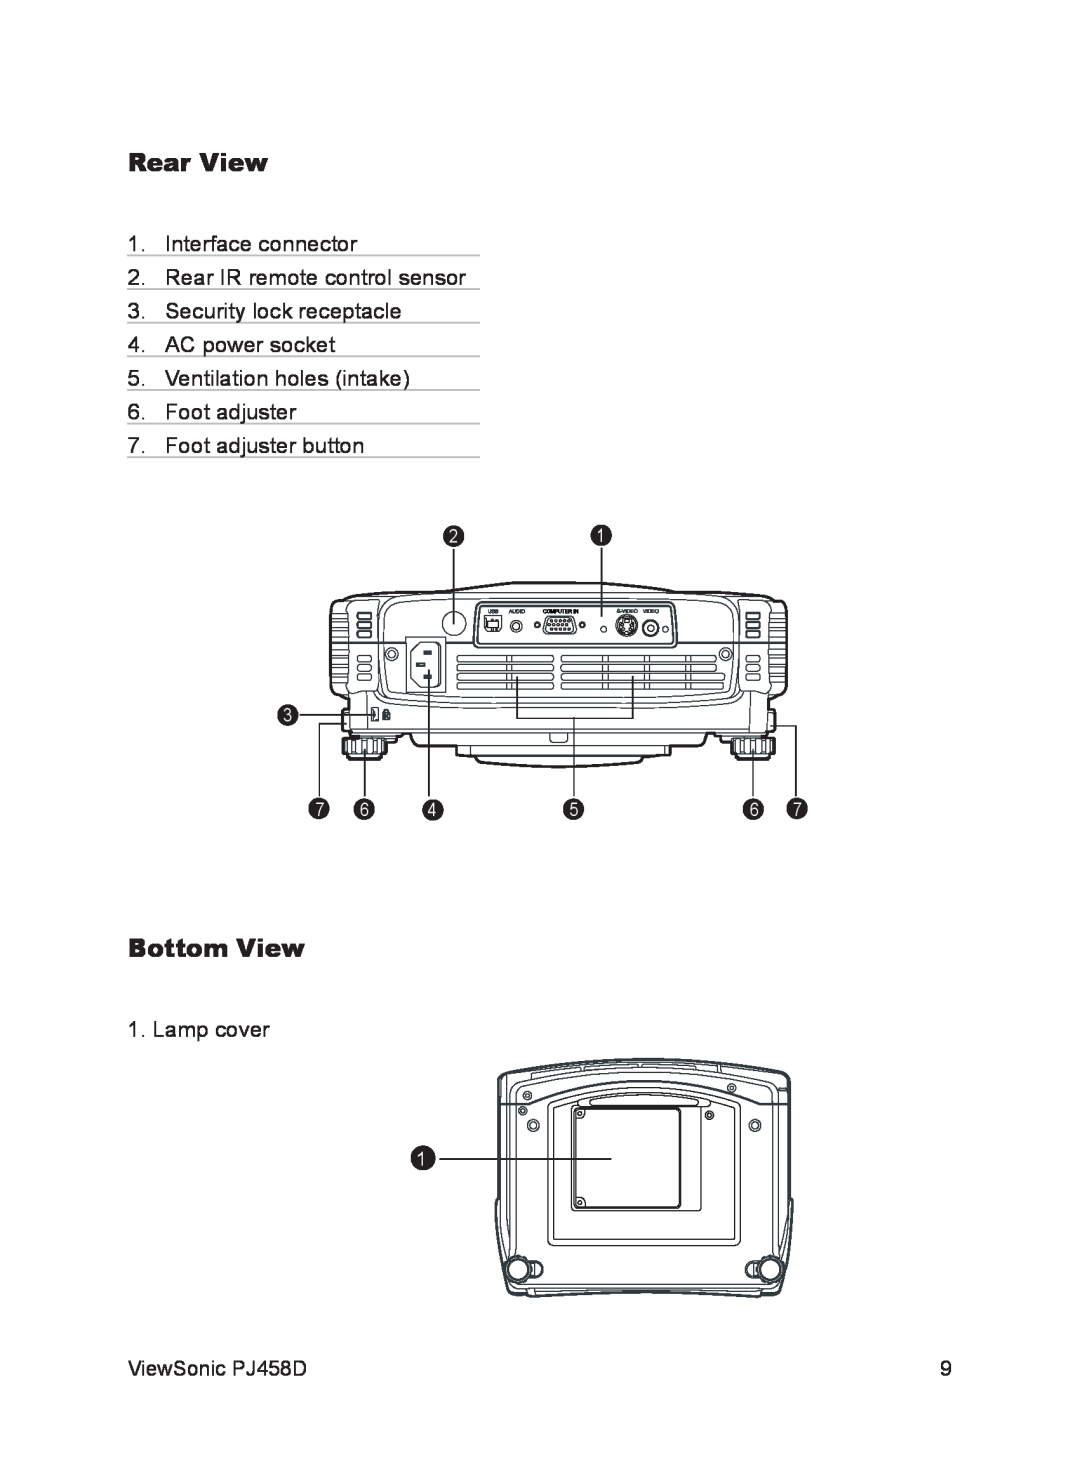 ViewSonic VS10872 manual Rear View, Bottom View,    